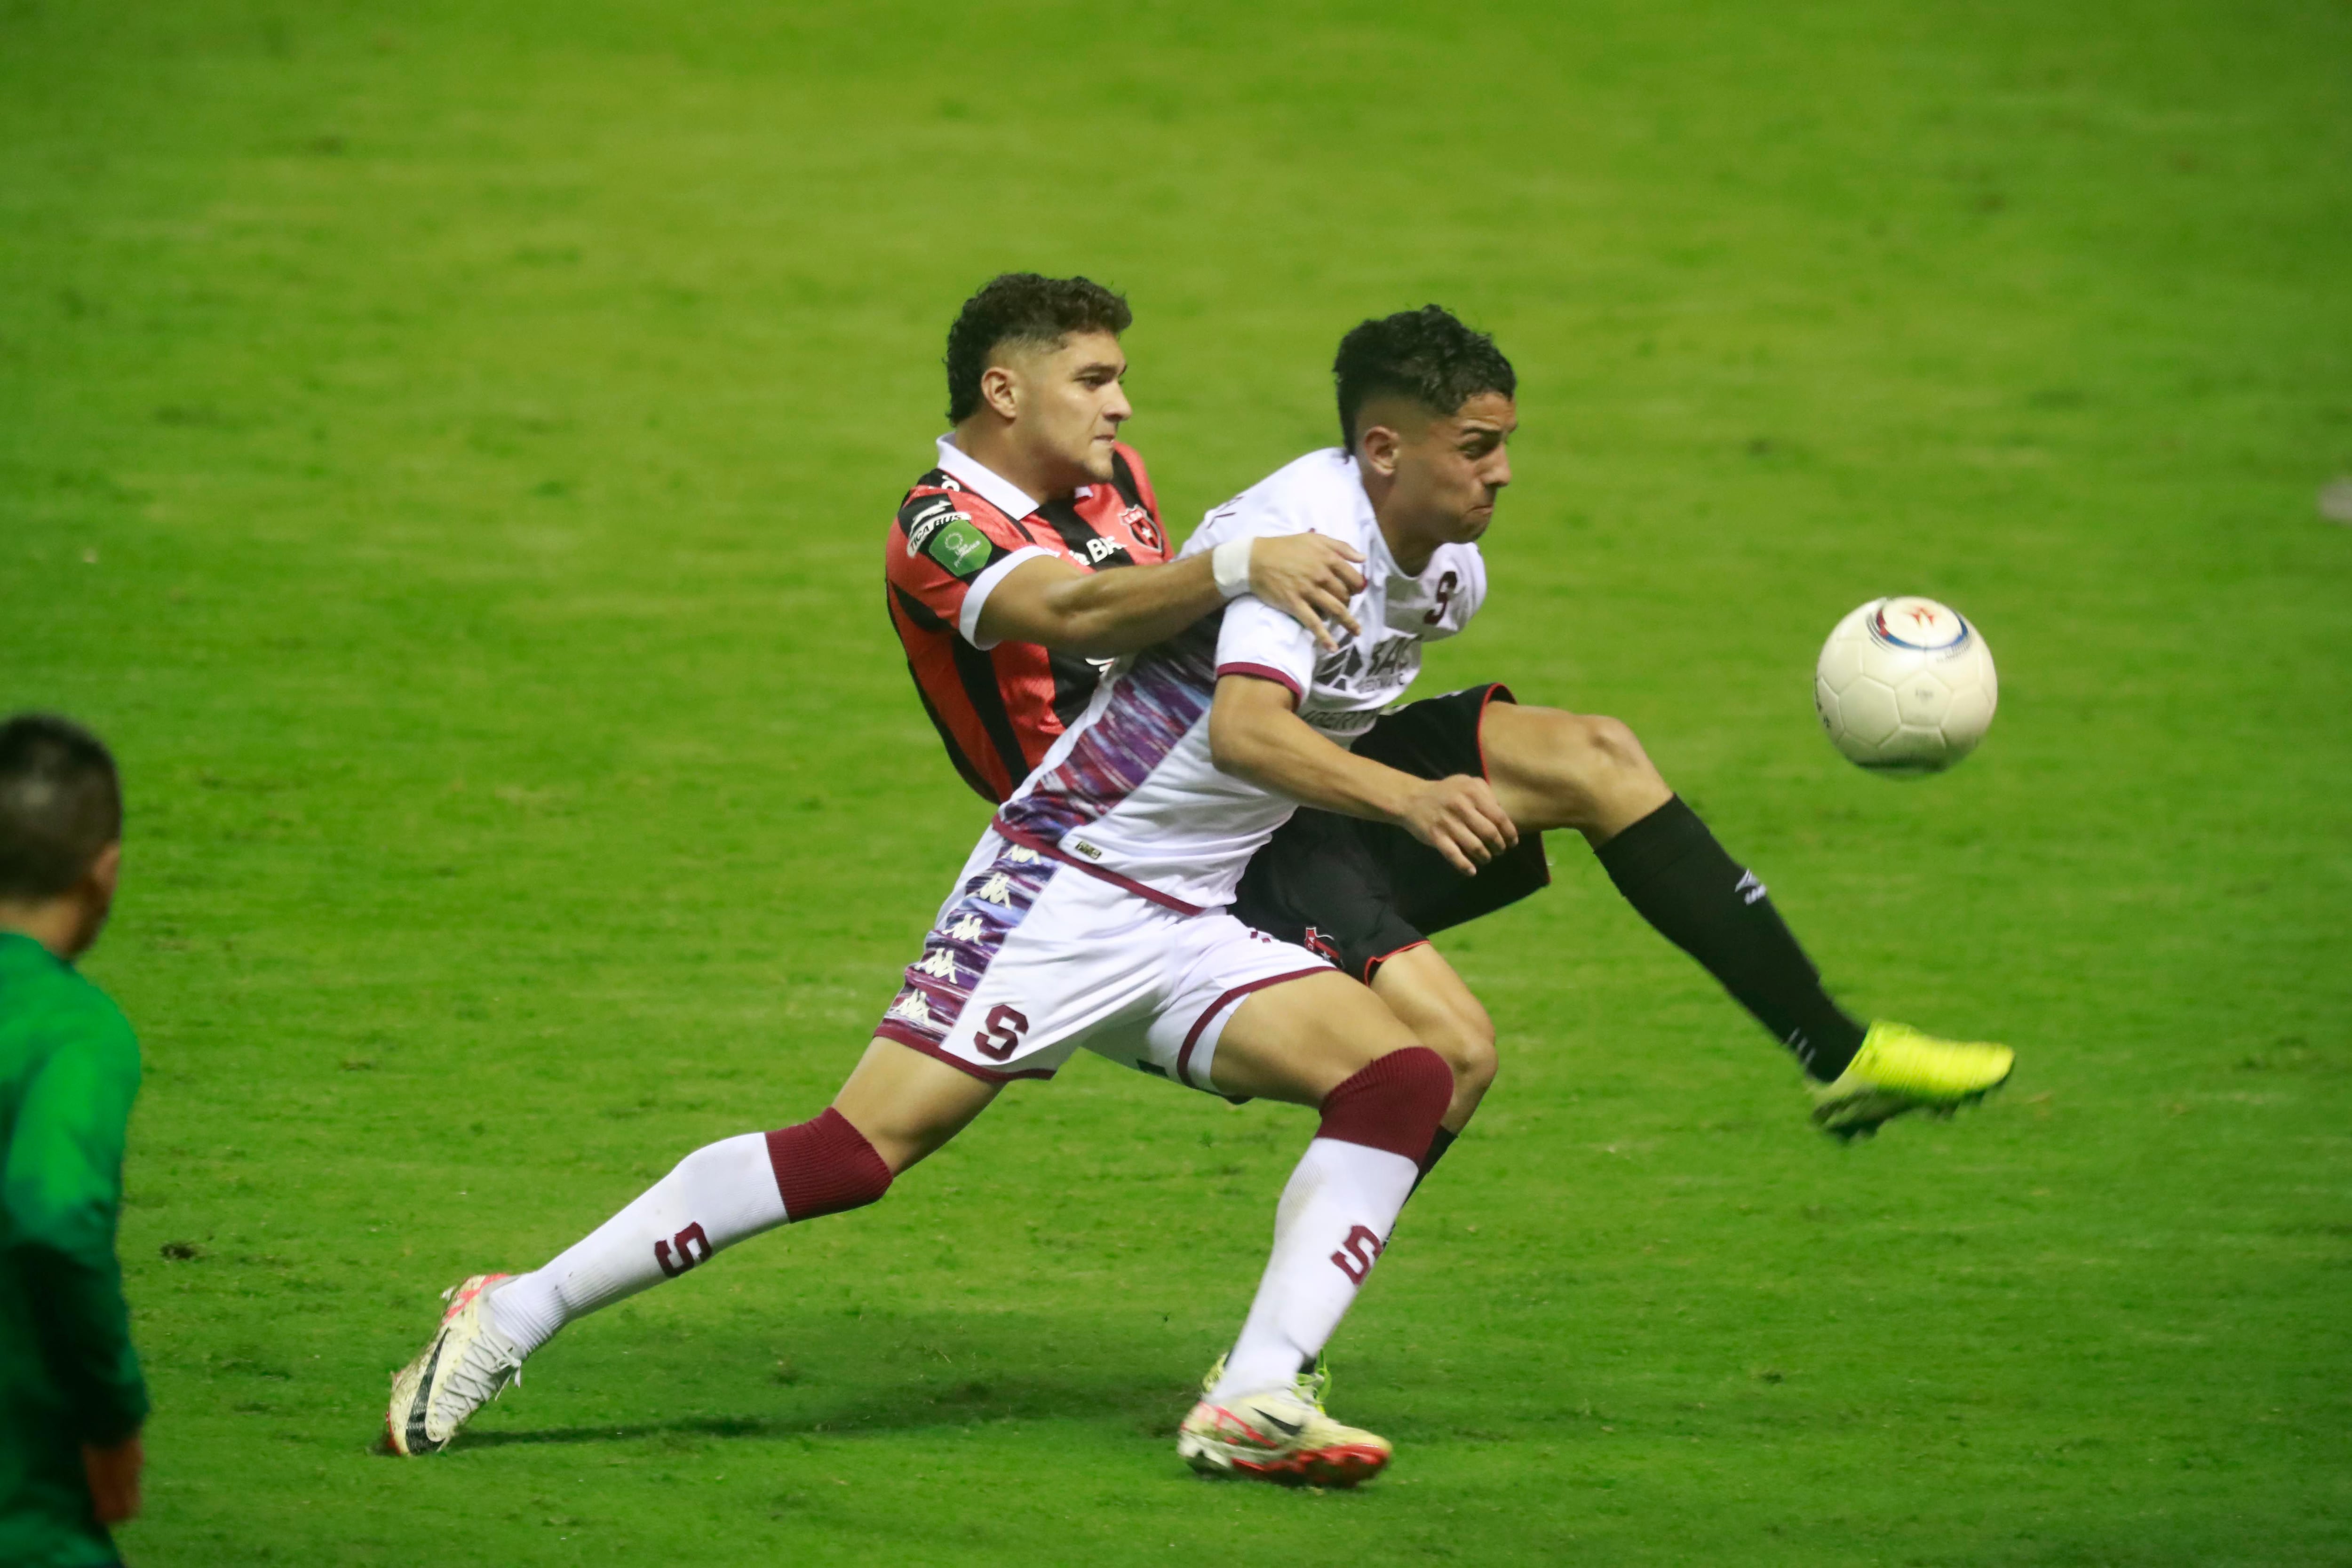 La final del Torneo de Copa entre Alajuelense y Saprissa estuvo muy disputada. El manudo Guillermo Villalobos y Warren Madrigal dieron muestra de ello.
